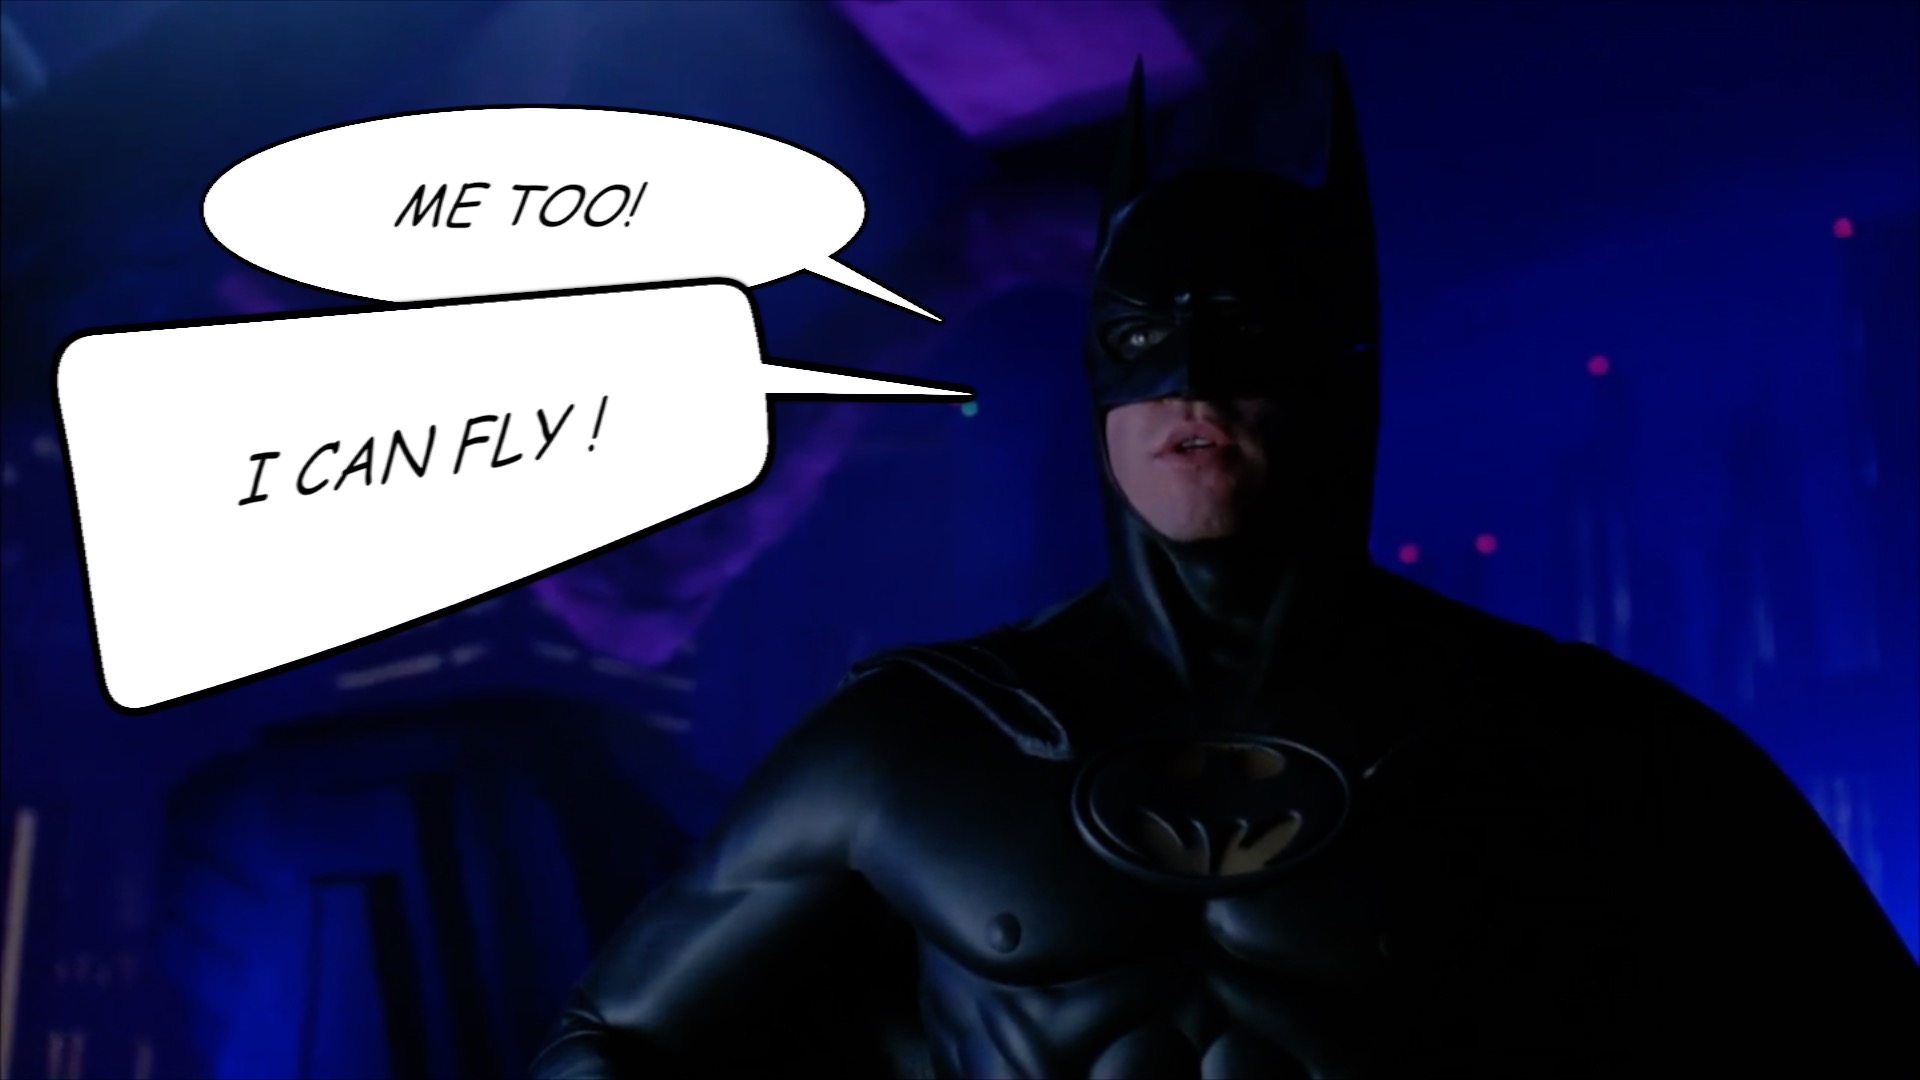 batman-v-superman-johanna-vaude-I-can-fly